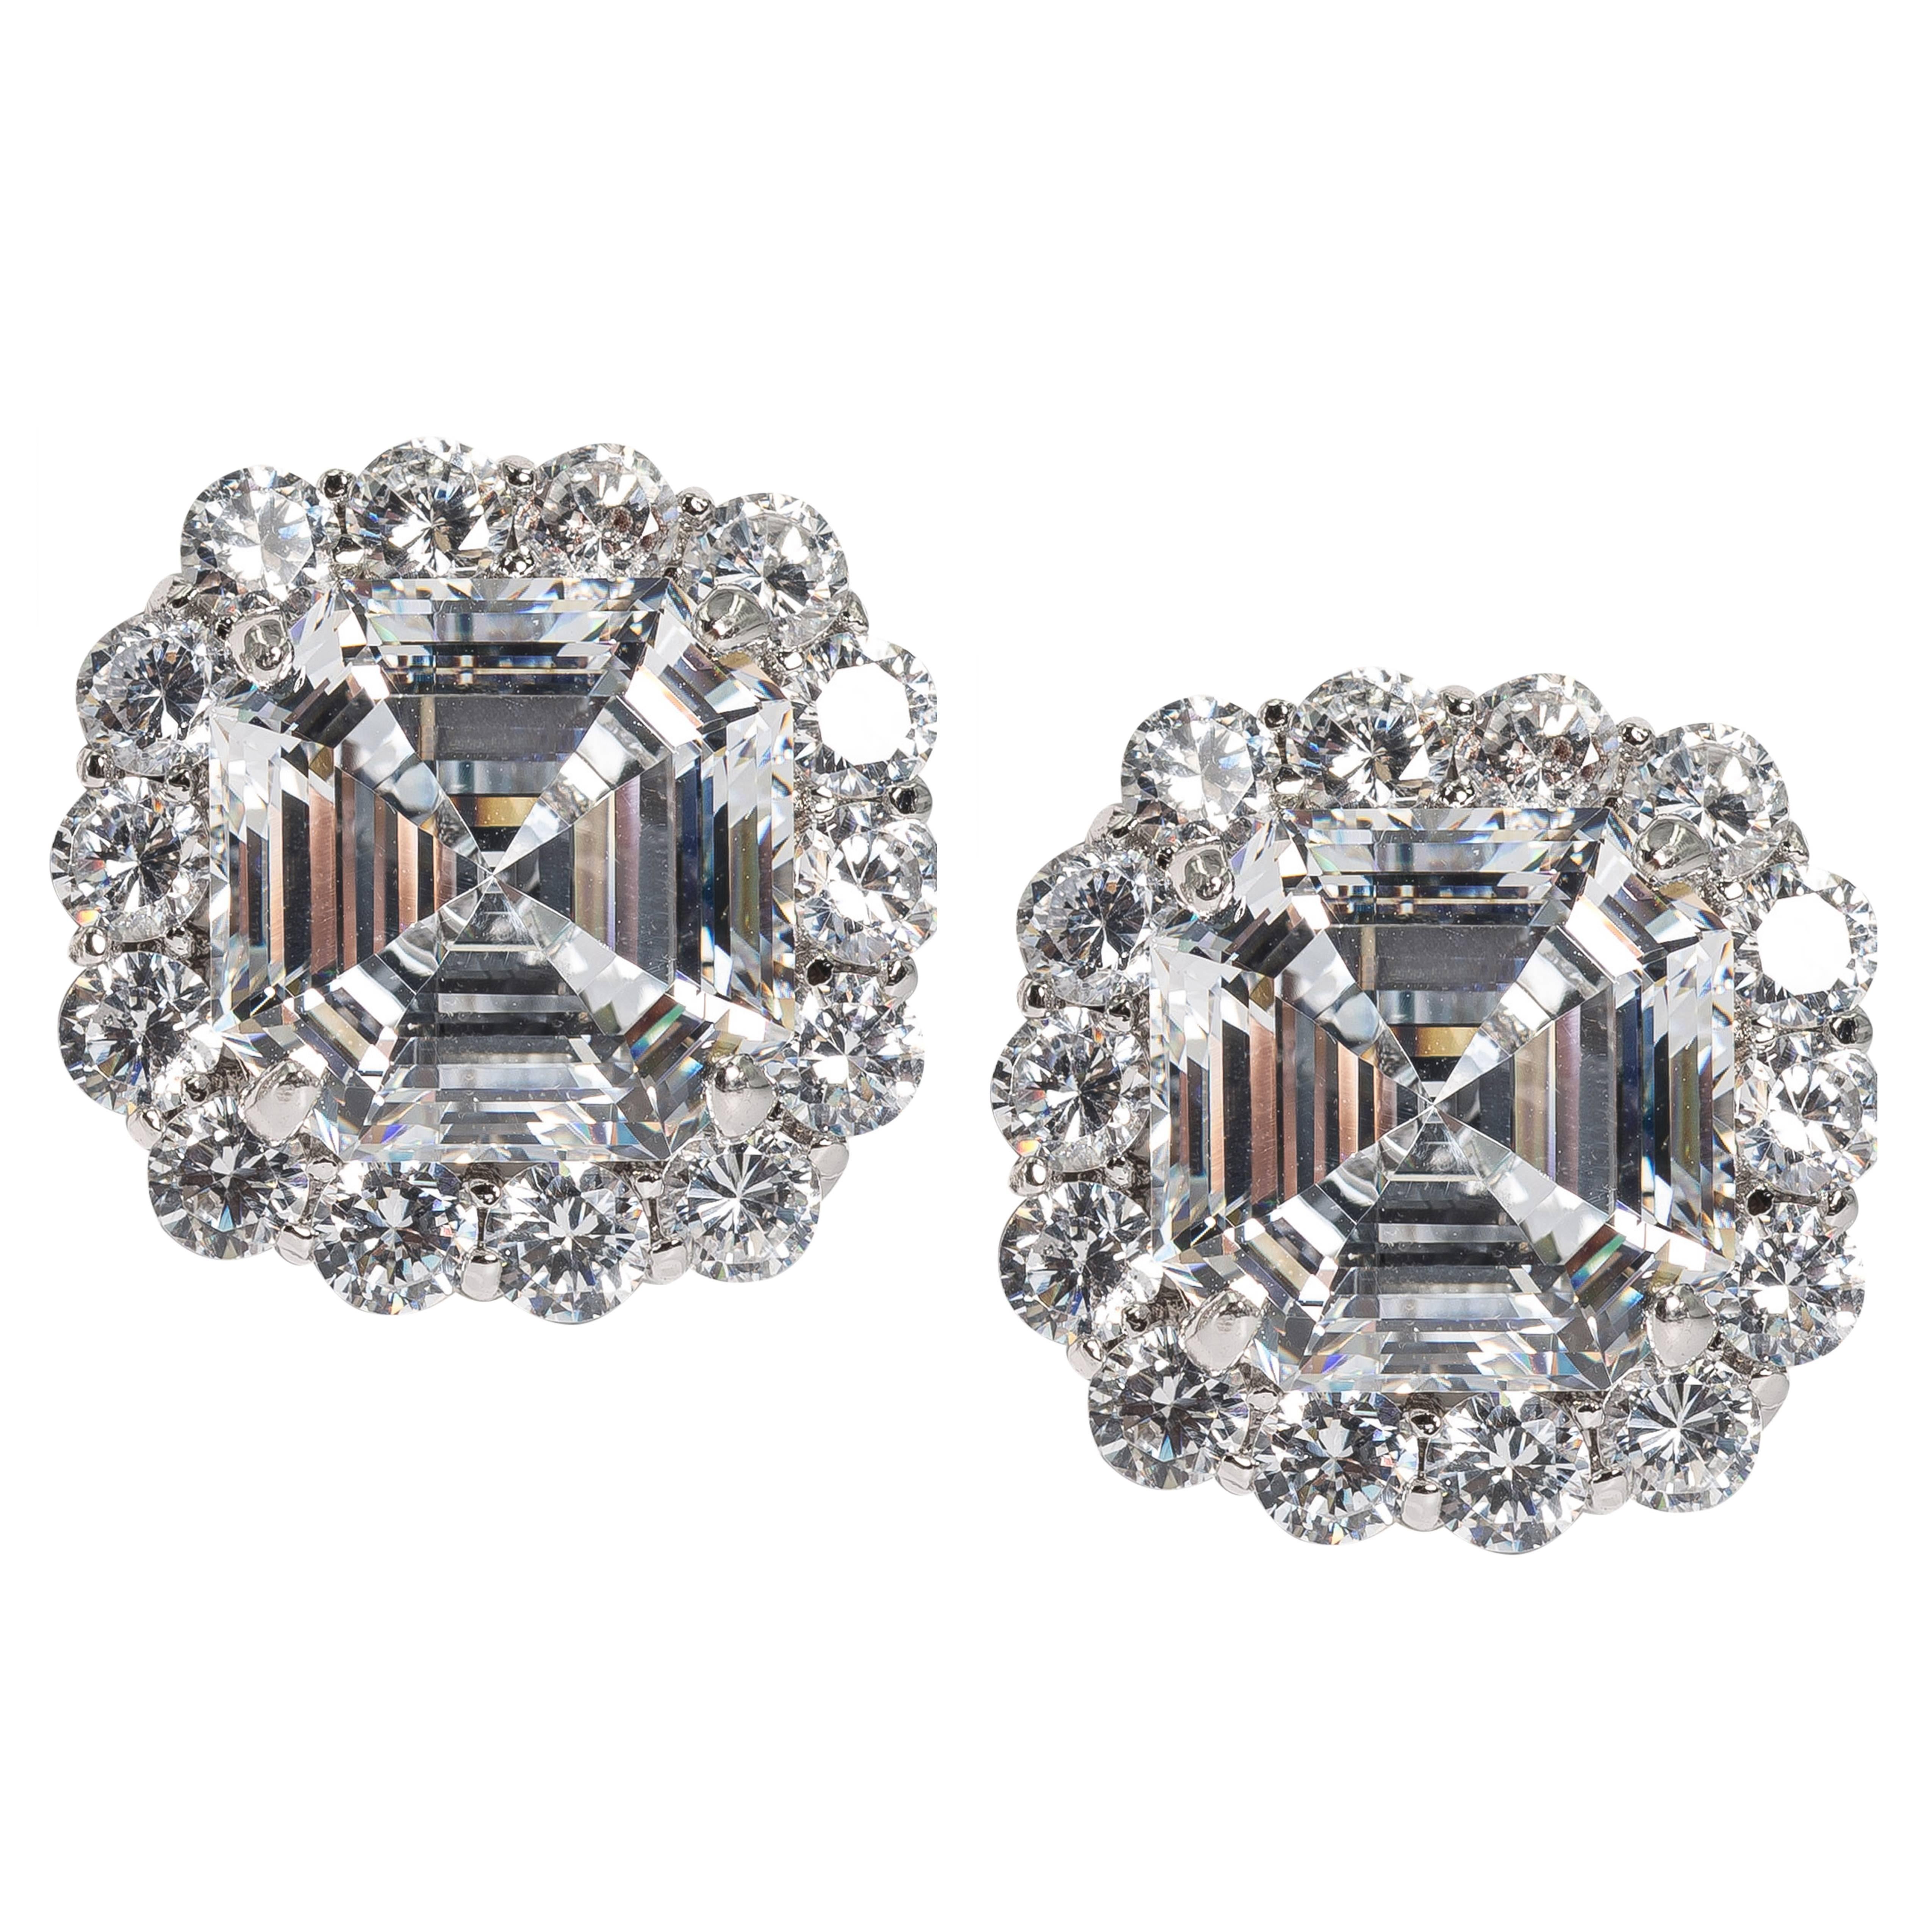  Glamorous Pair Faux Asscher Cut Diamond Earrings